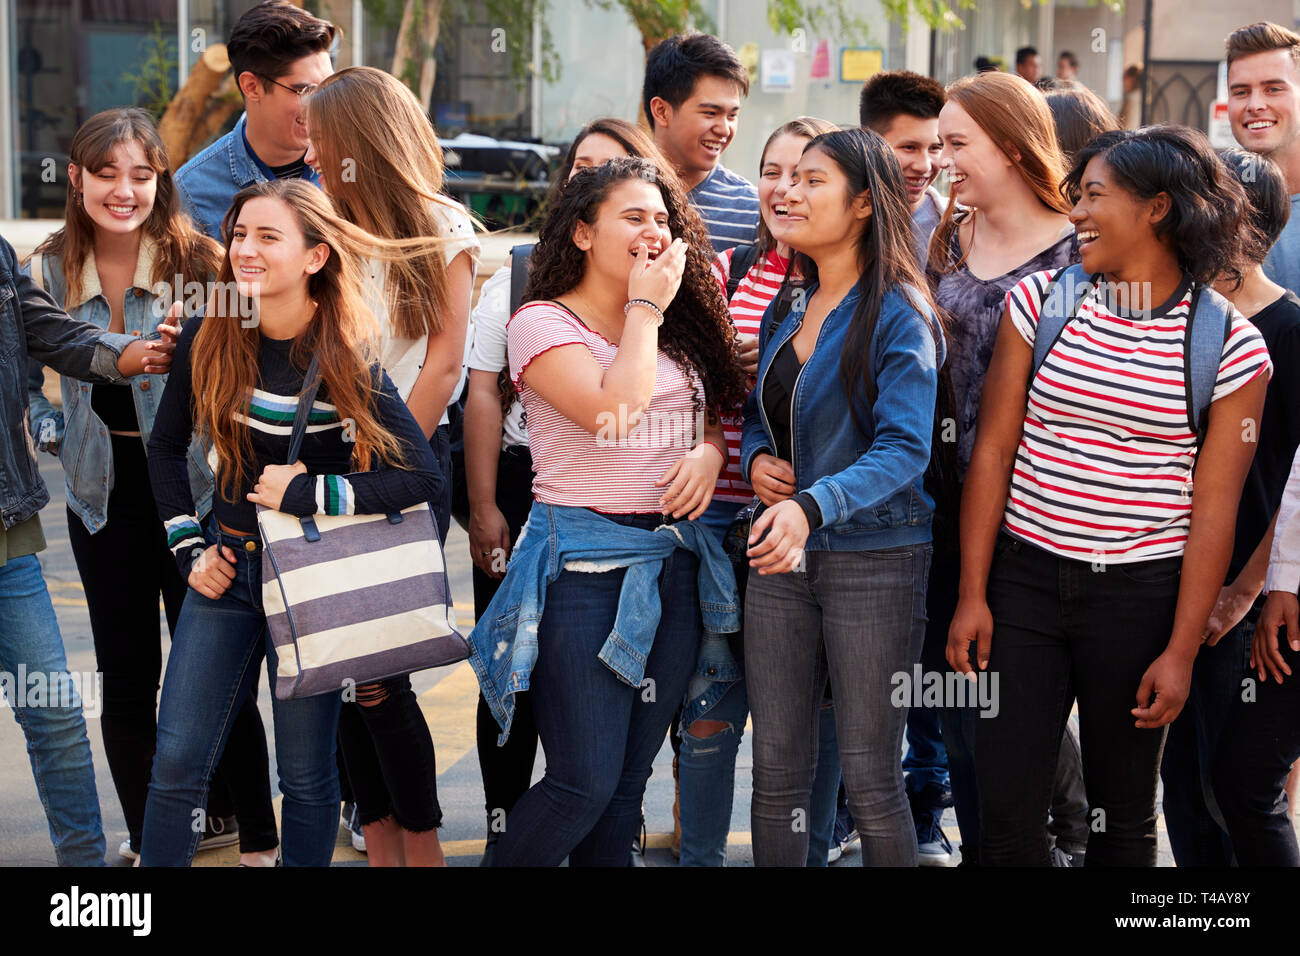 Gruppe von lächelnden Männliche und weibliche Studenten außerhalb der Schule Gebäude Stockfoto